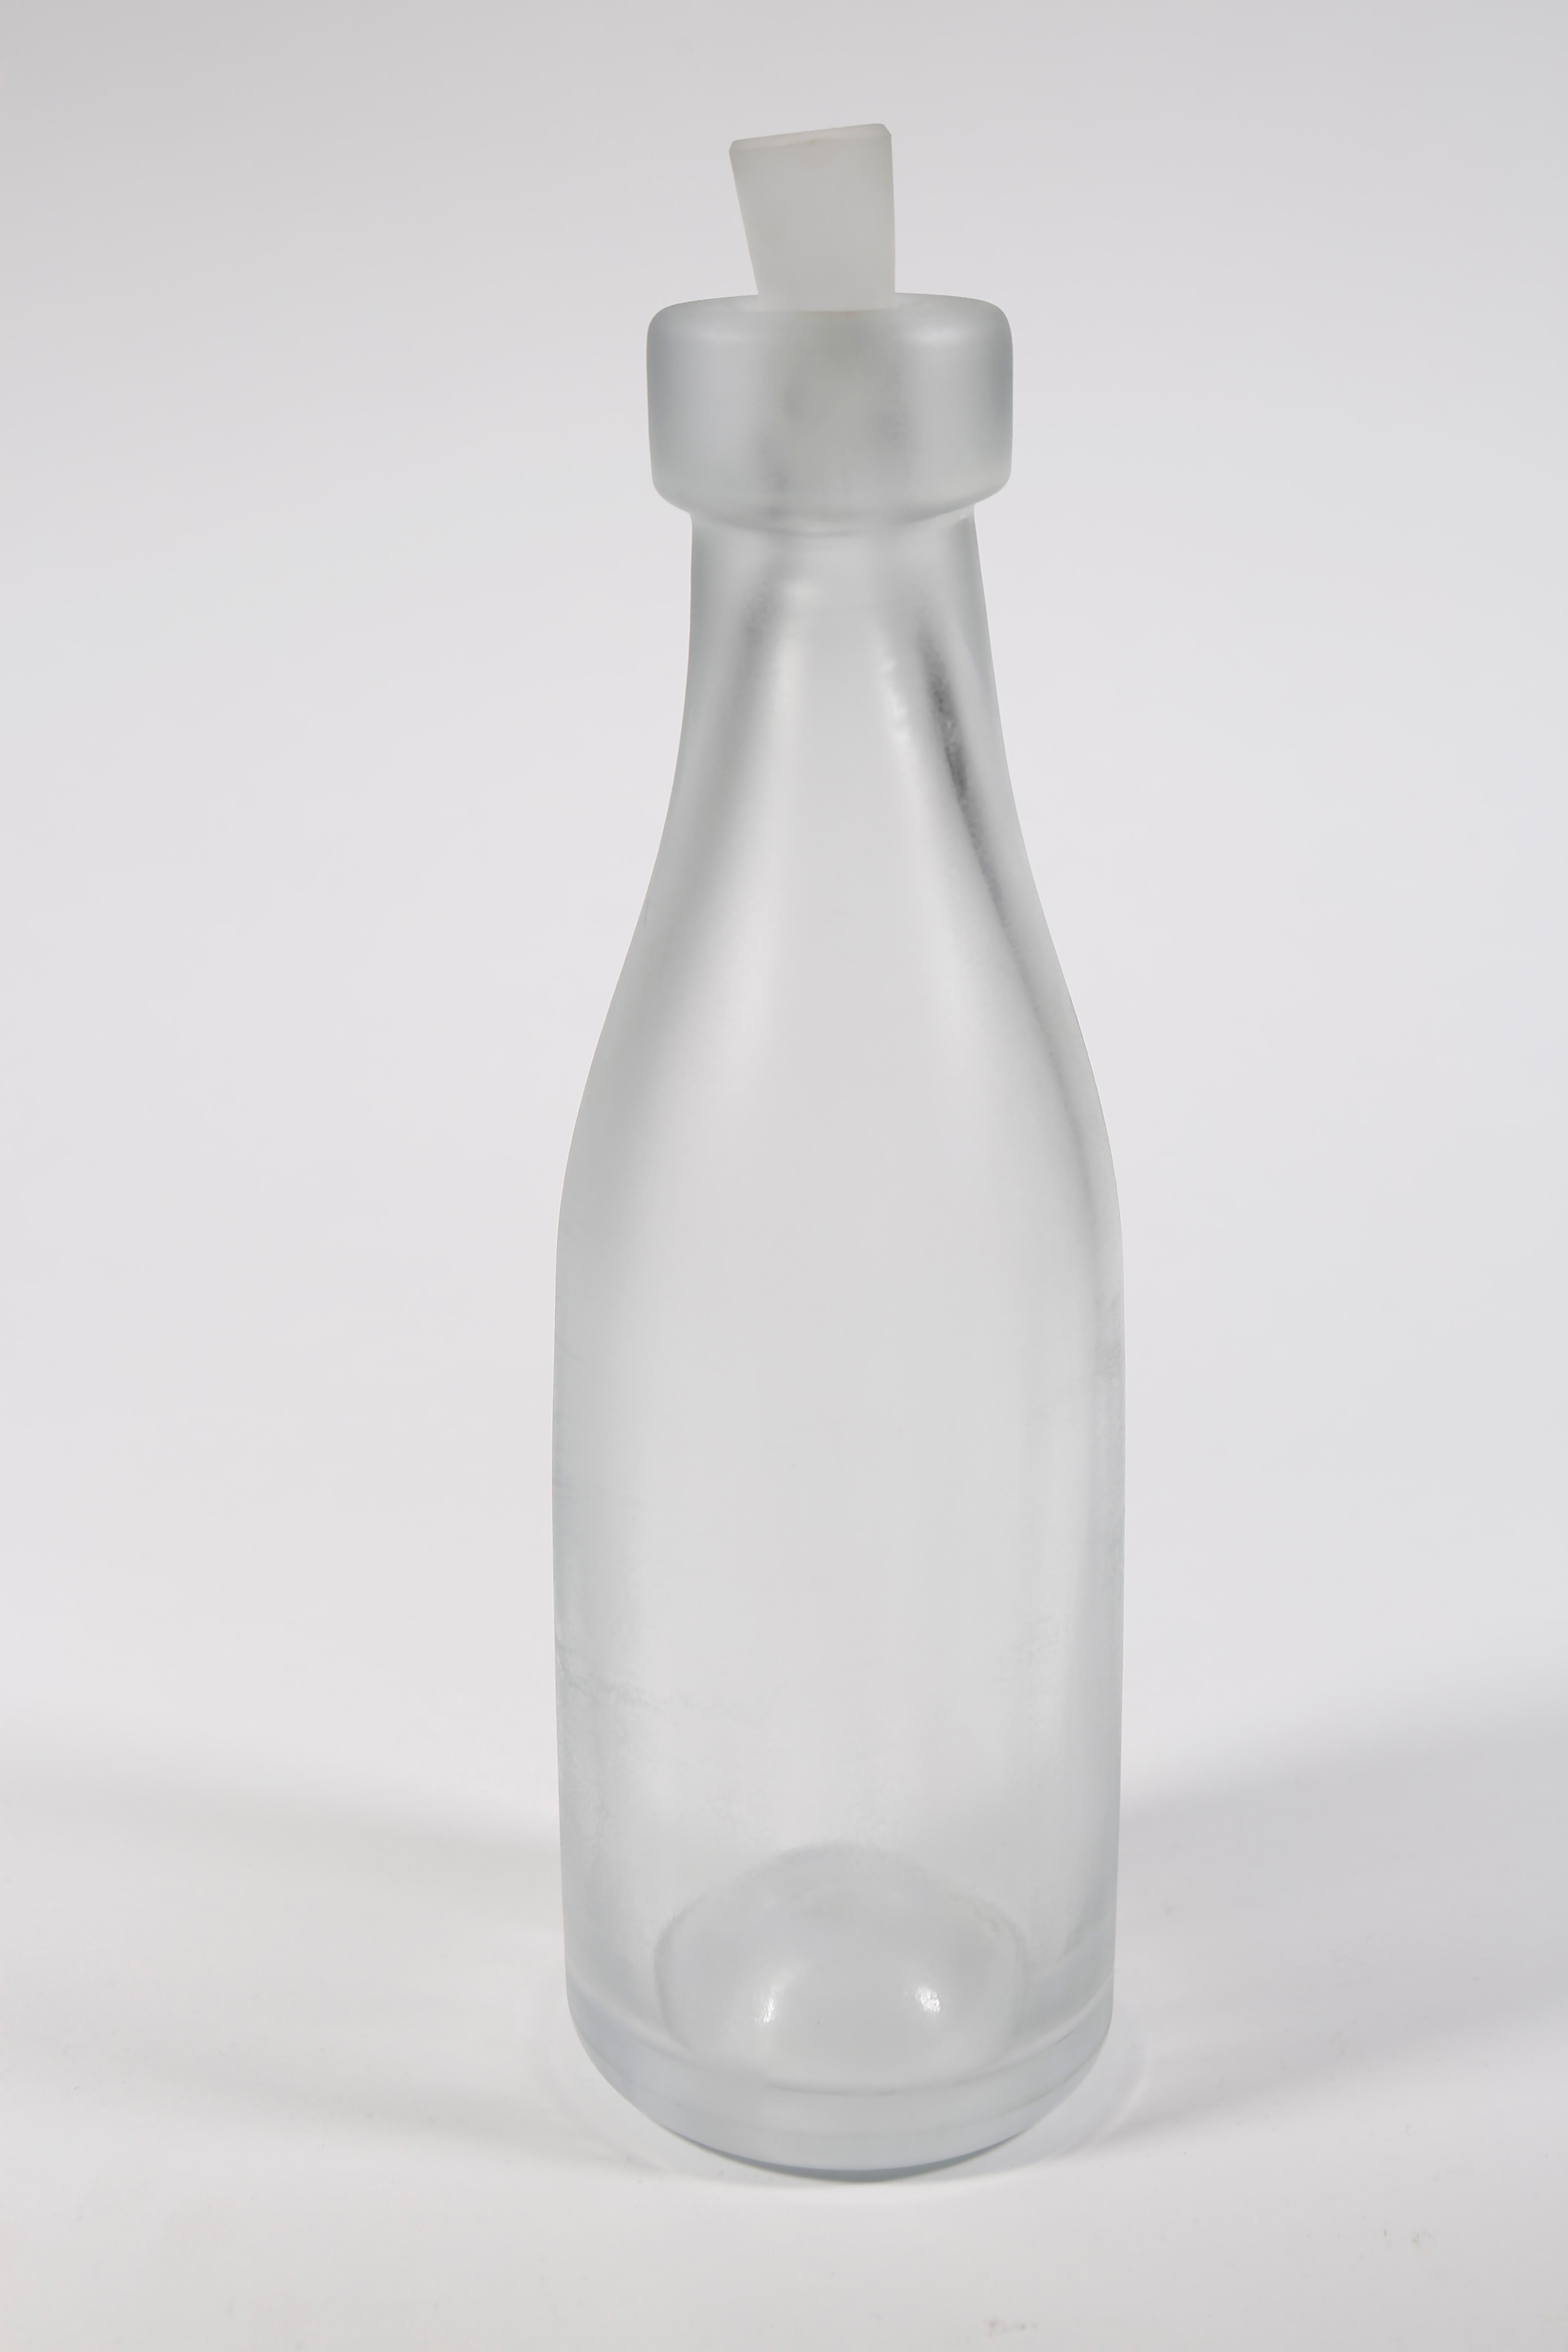 Whole Nother Melk Bottles/Vases: Etched Blown Glass, Chicago, Jordan Mozer, 2013 For Sale 7